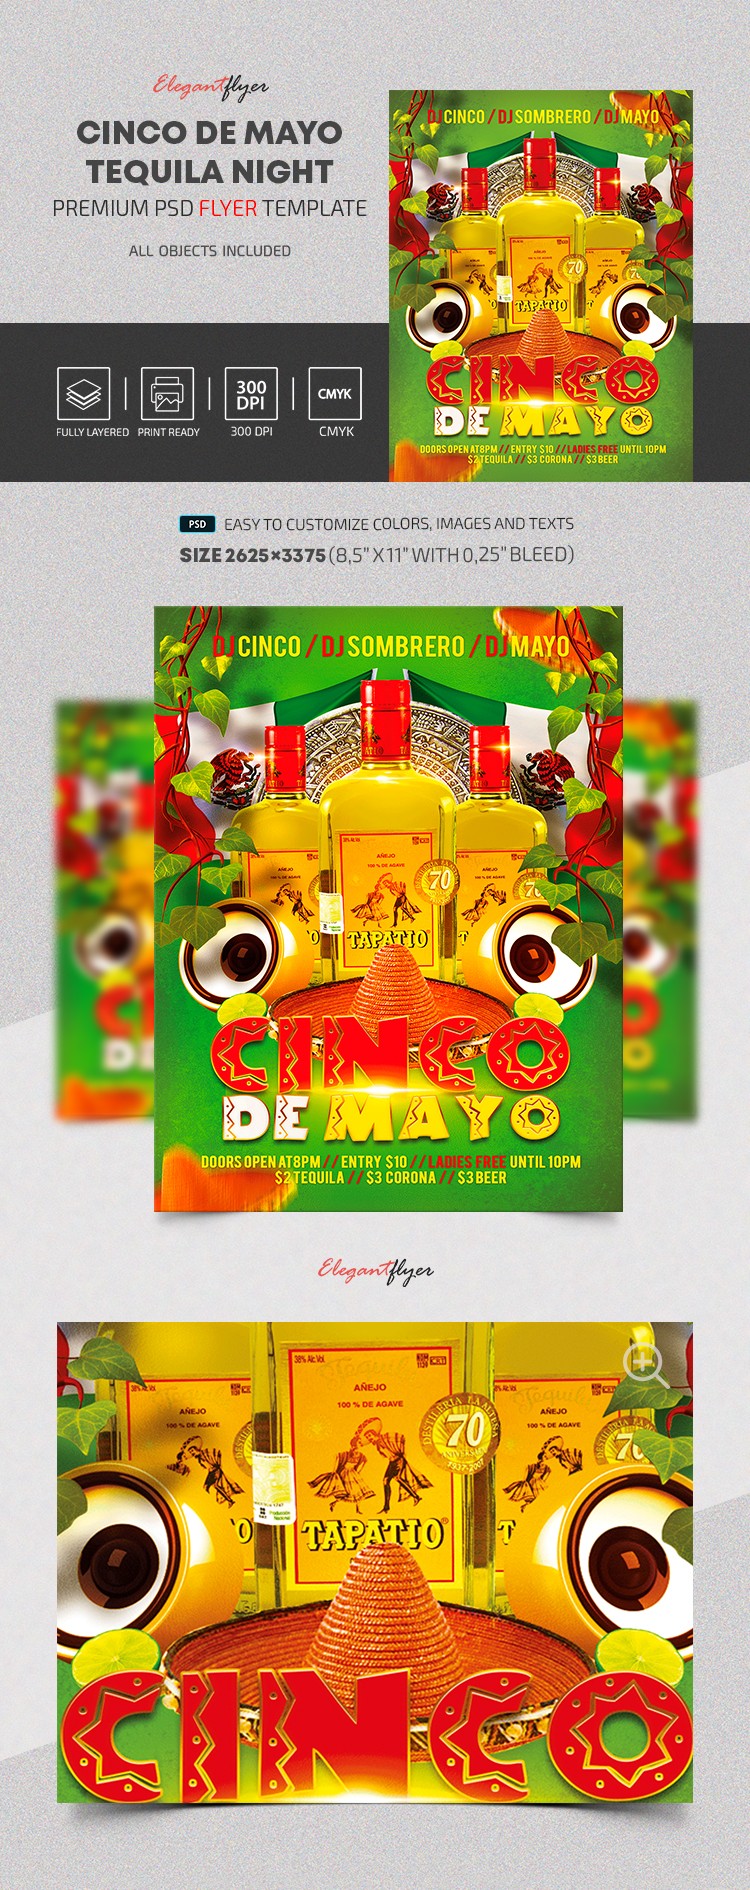 Nuit de Tequila pour Cinco De Mayo by ElegantFlyer